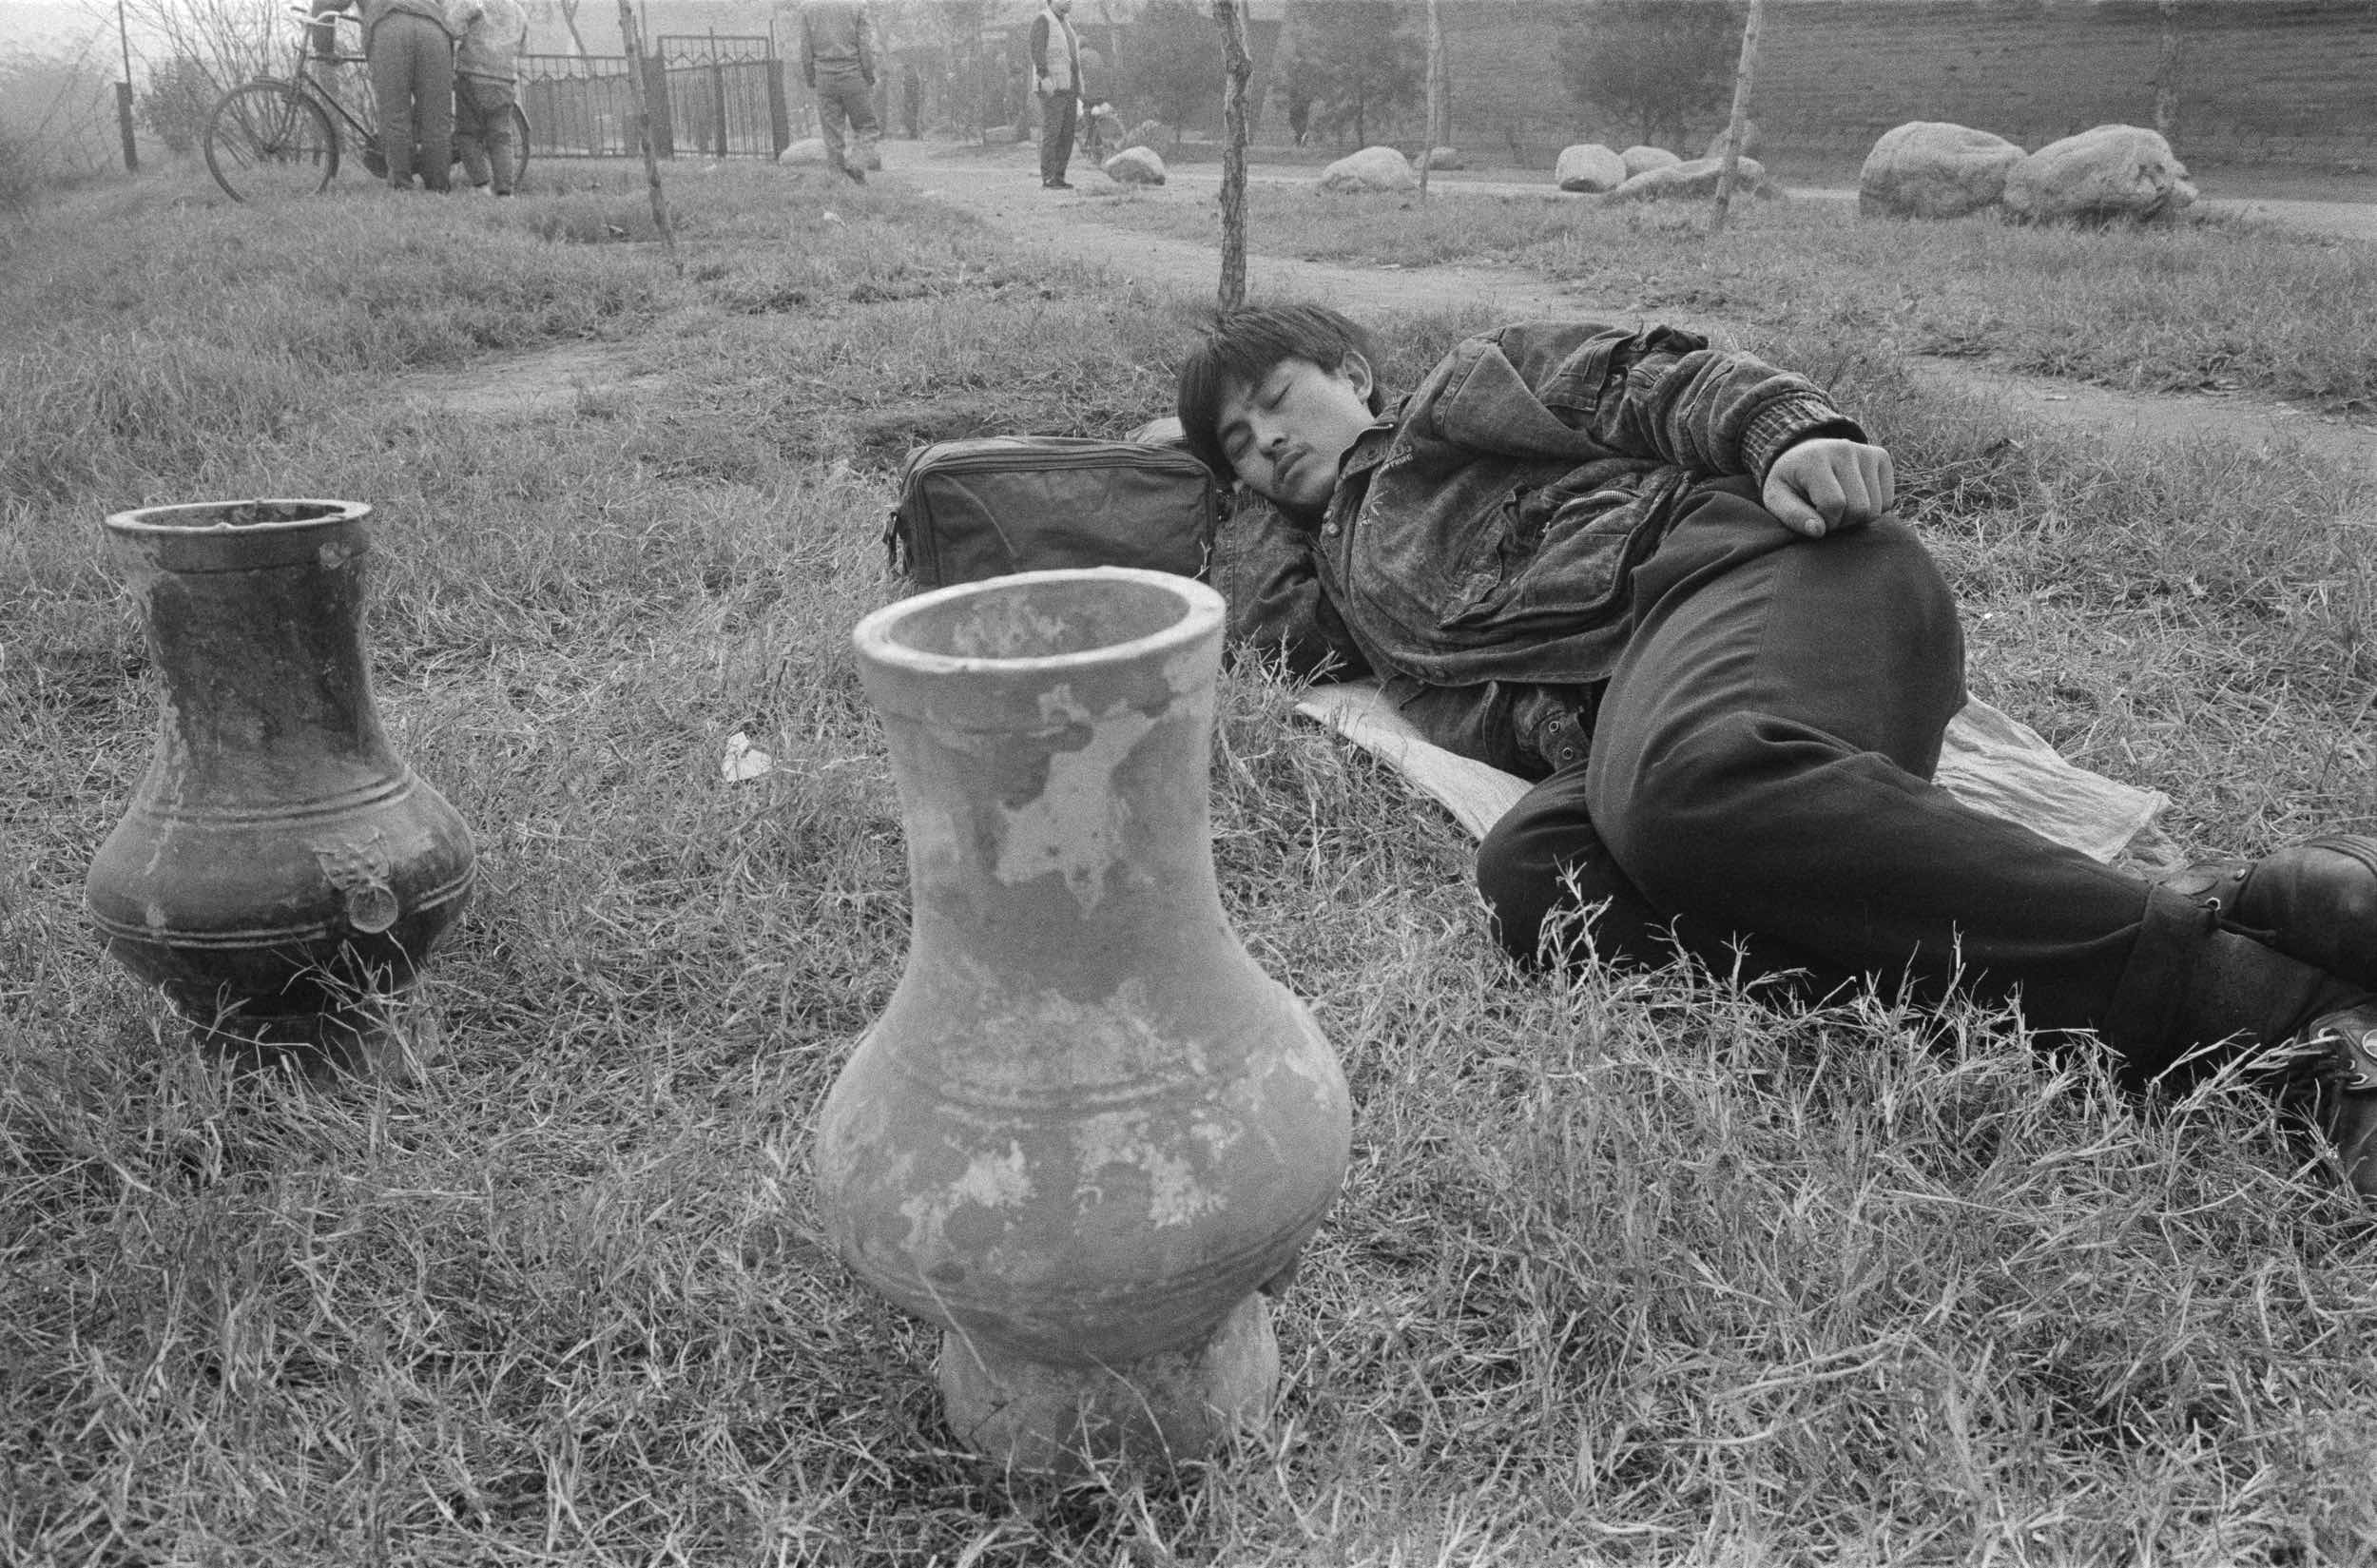 Fotografies de Pequín, 1993-2001. Una urna de la dinastia Han en venda fora de la muralla de la ciutat de Xi’an. 1995 © Ai Weiwei